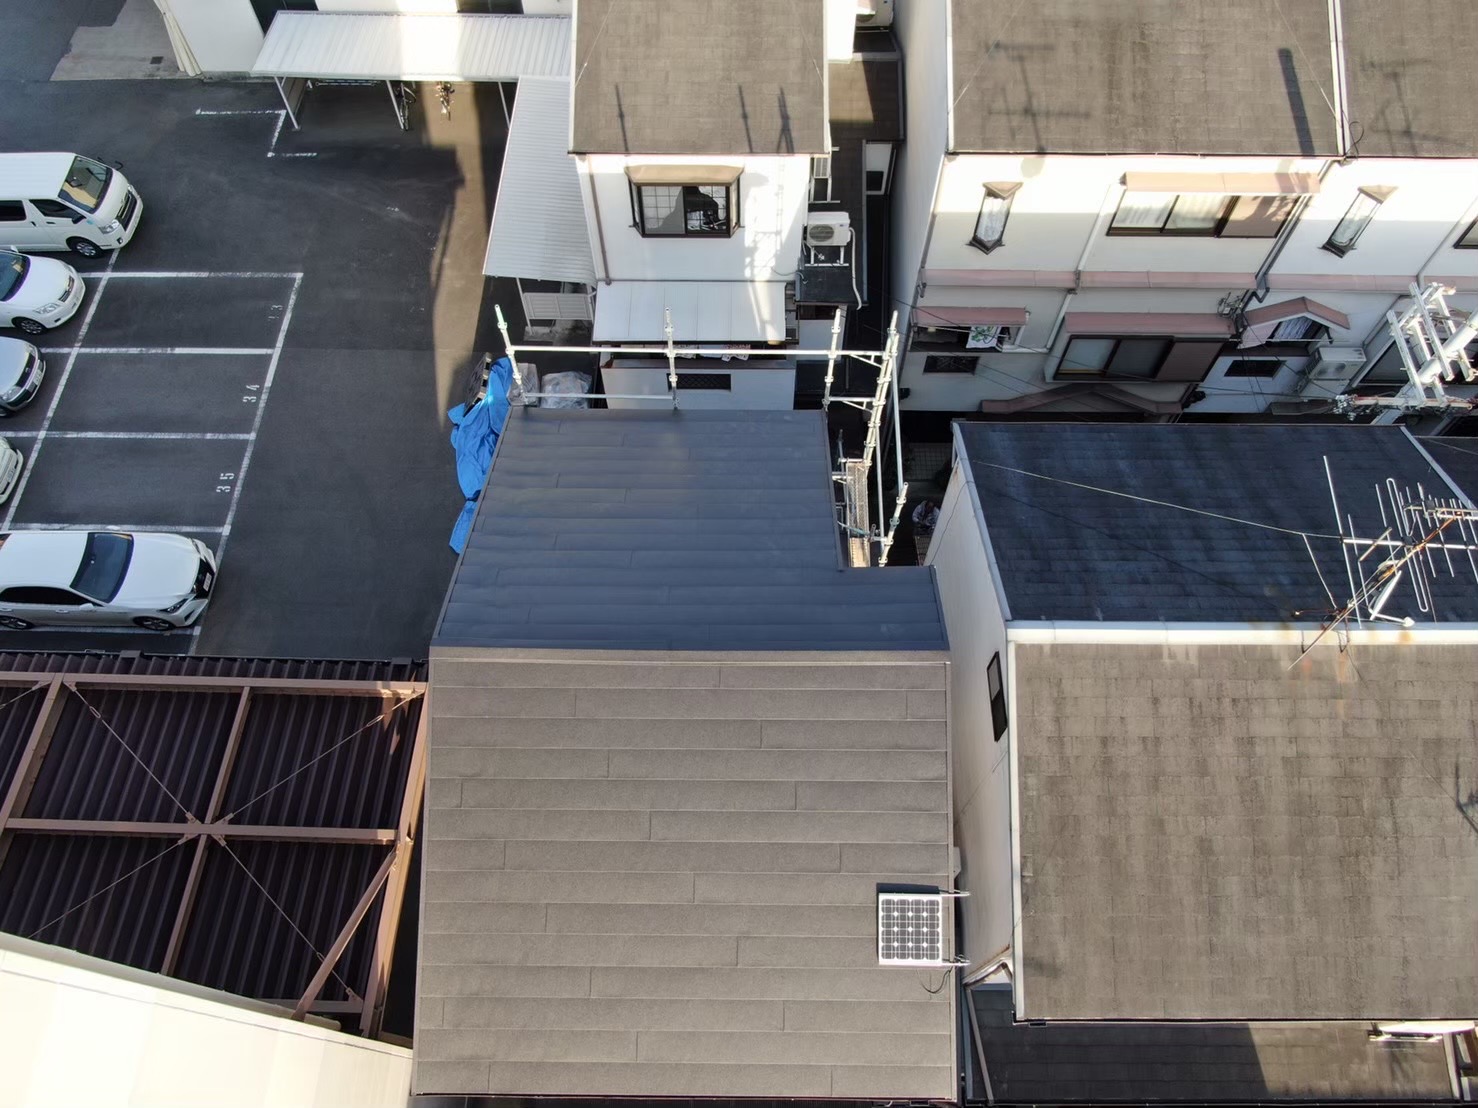 東大阪市南鴻池でスレート屋根から金属屋根へカバー工法についての事例紹介